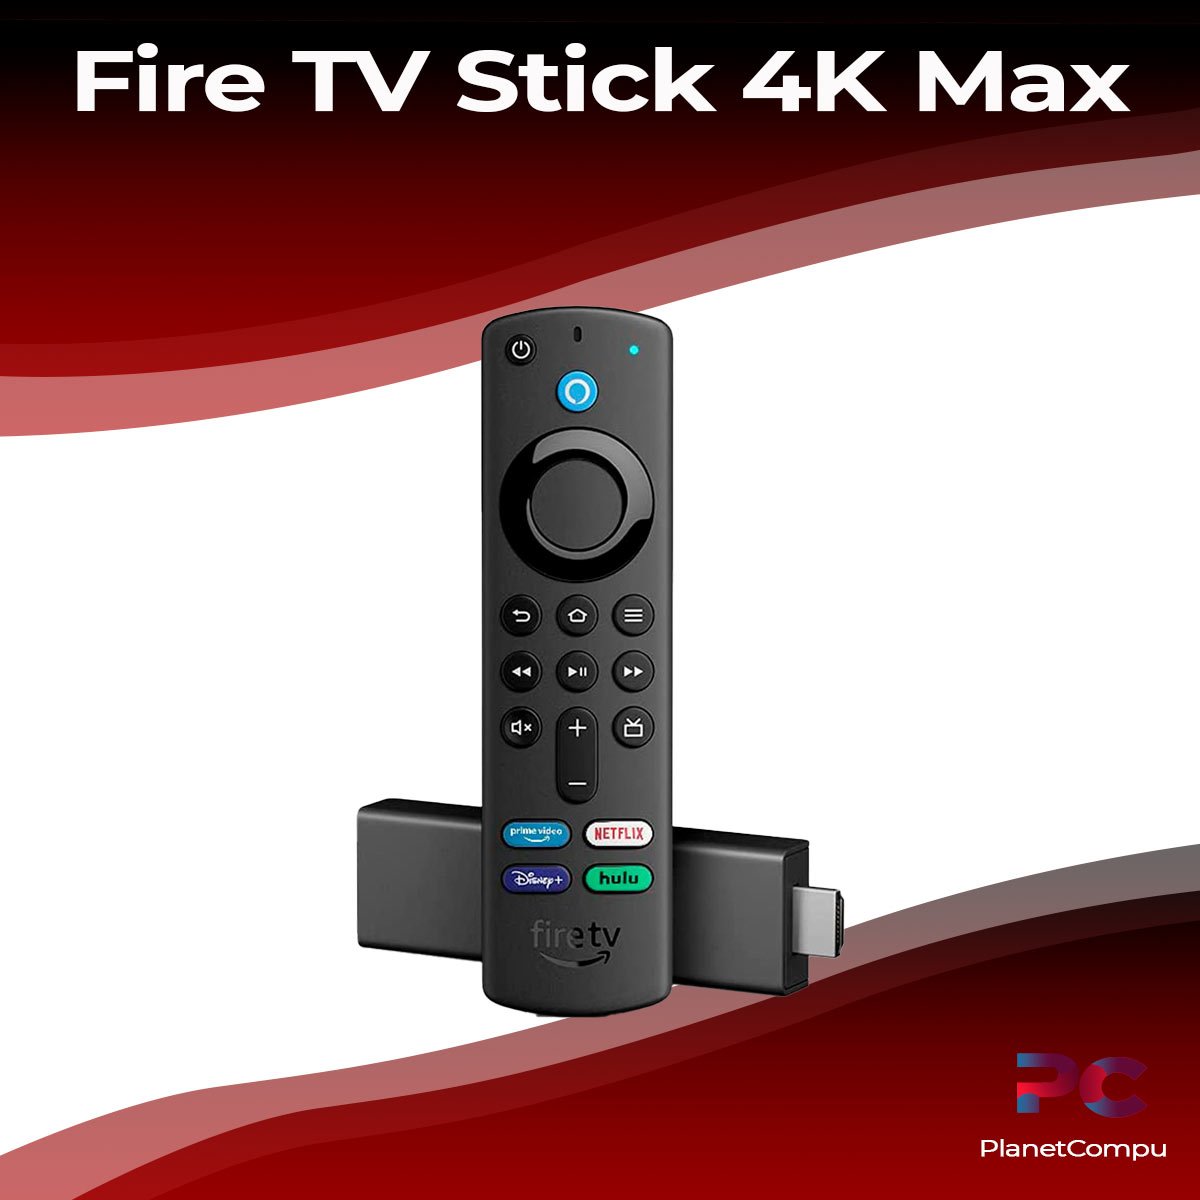 Nuevo  Fire TV Stick 4K Max: WiFi 6, Dolby Atmos y más potente